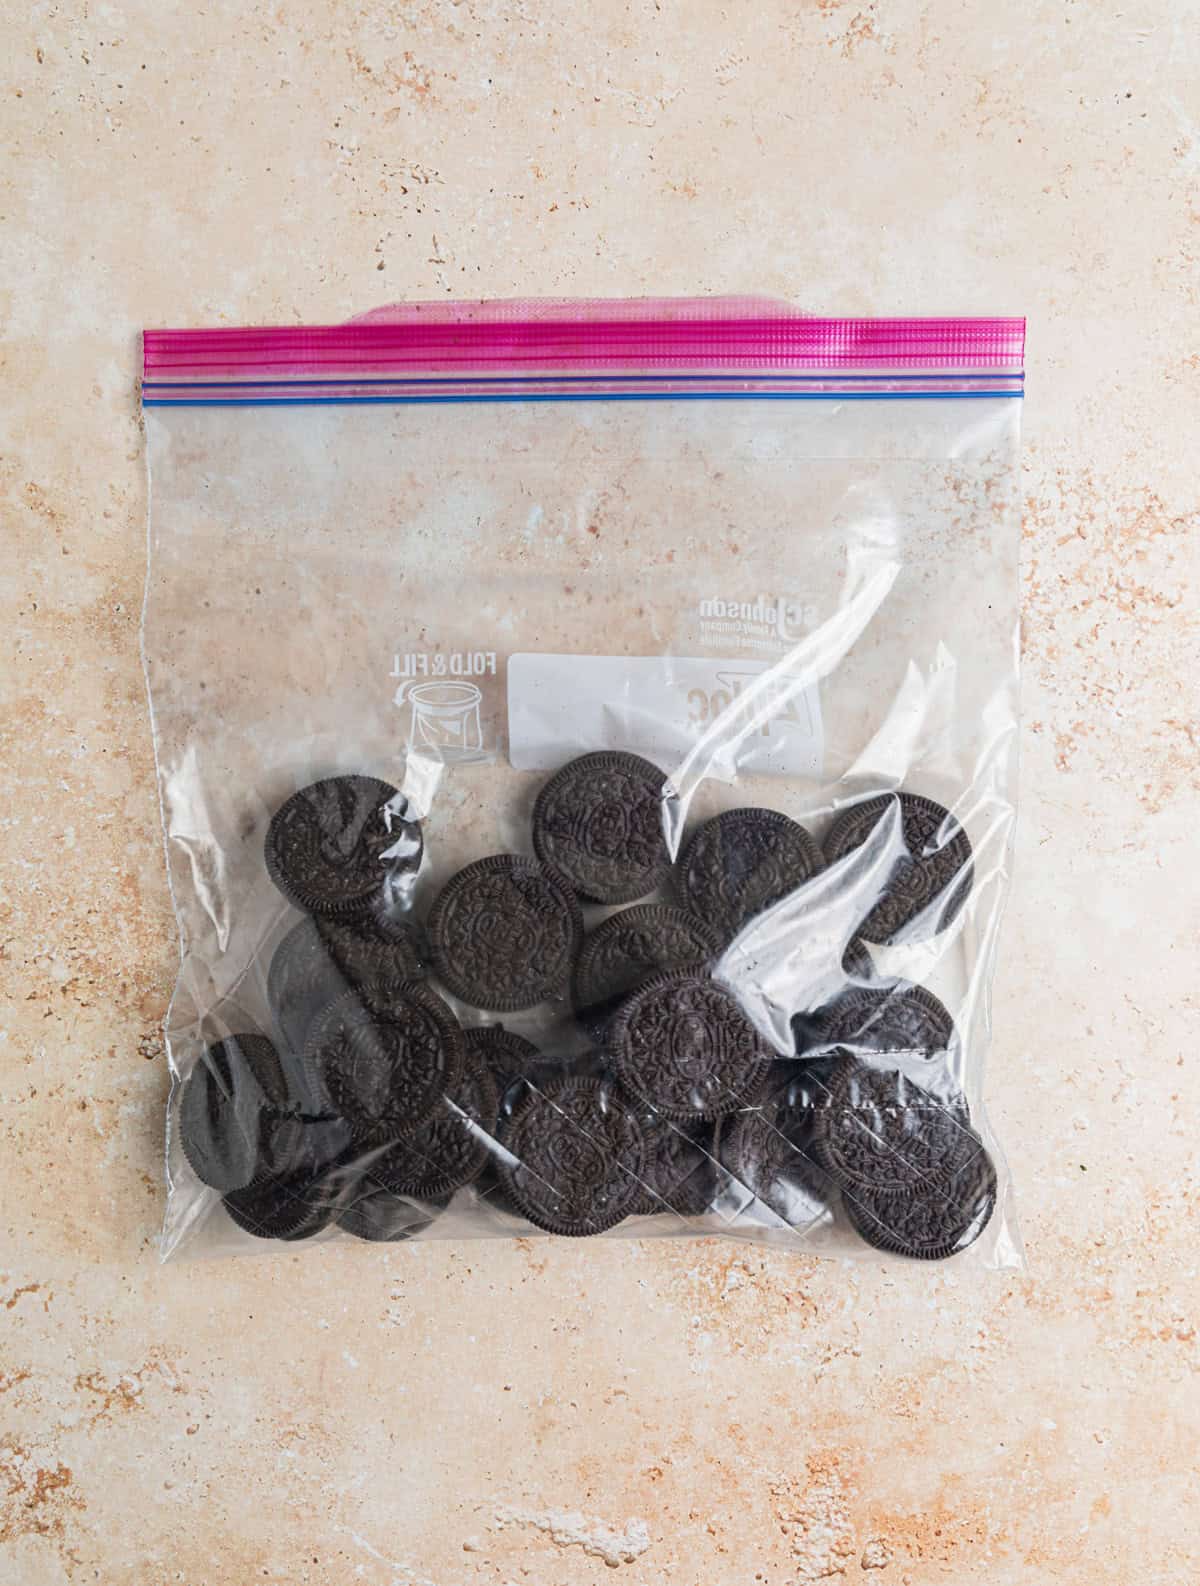 Oreo cookies in ziplock bag.